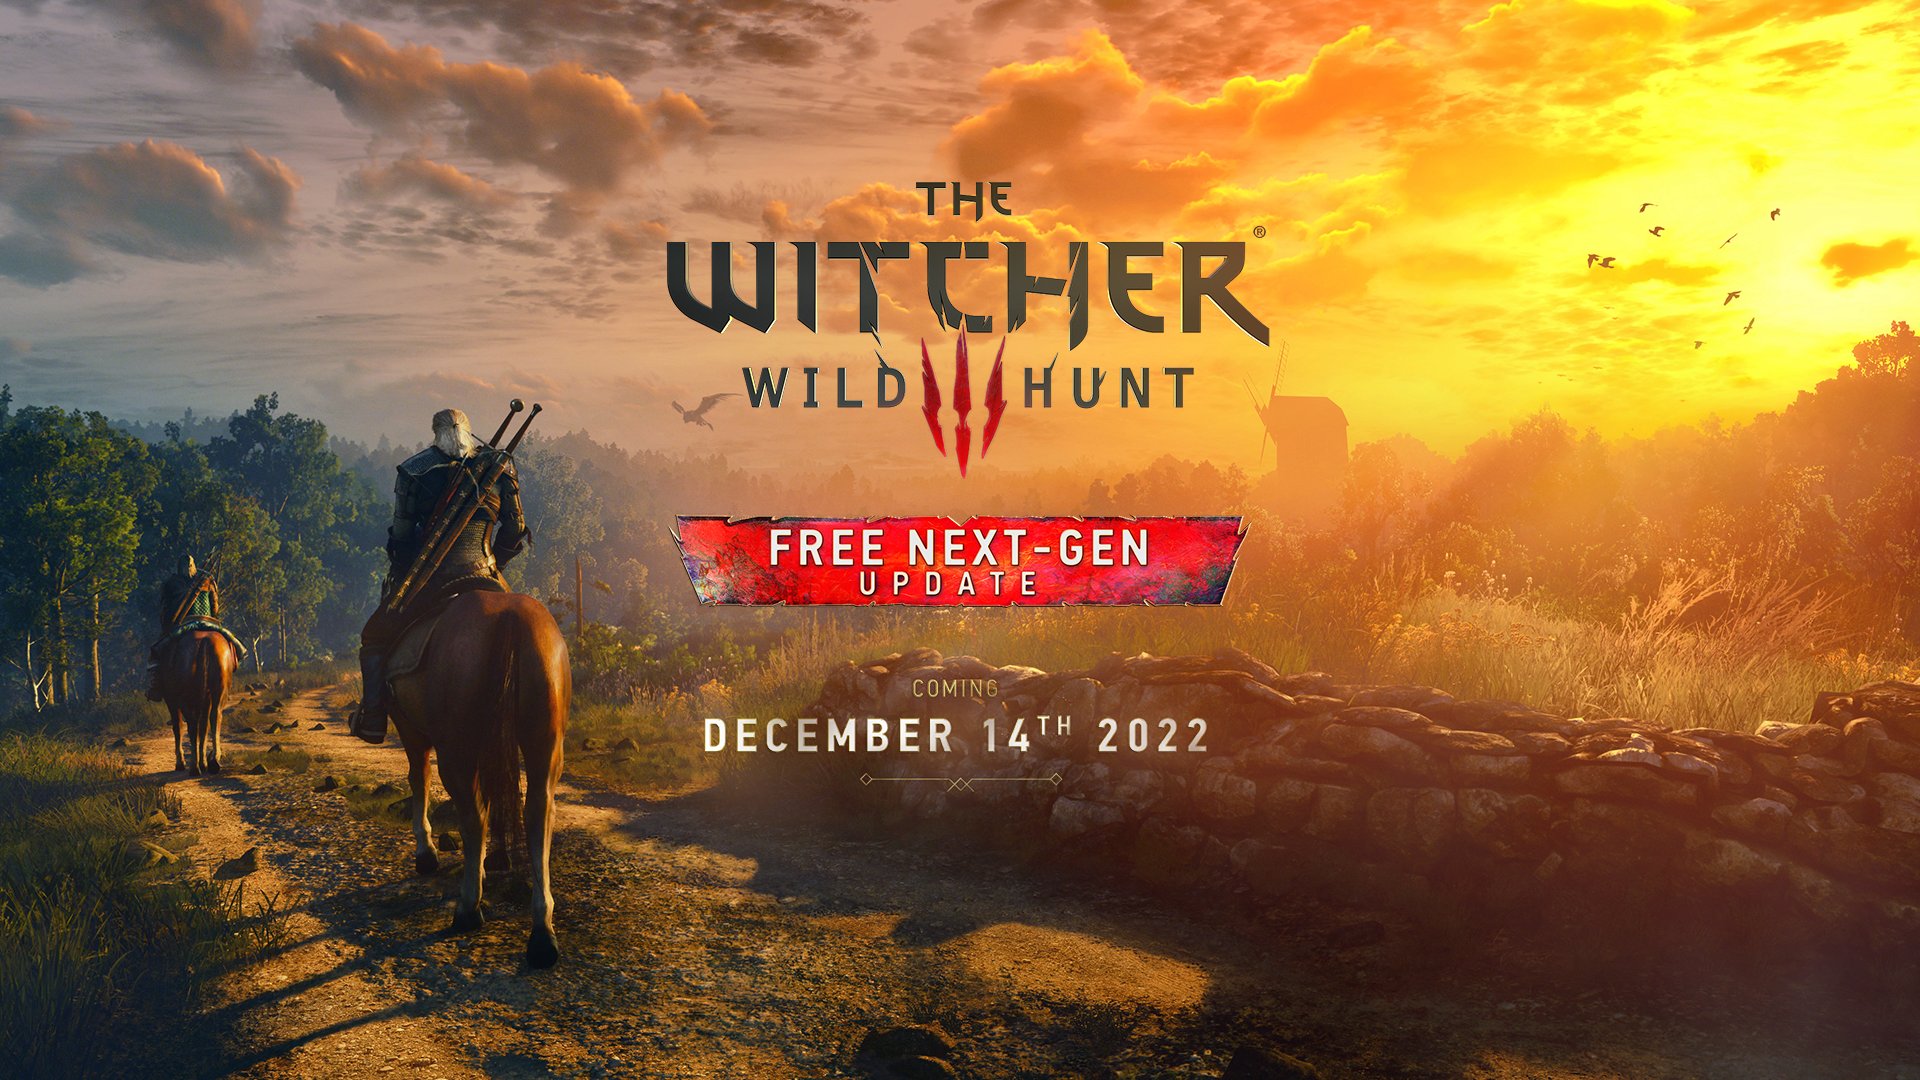 Что известно о версии The Witcher 3 нового поколения - ее релиз 14 декабря